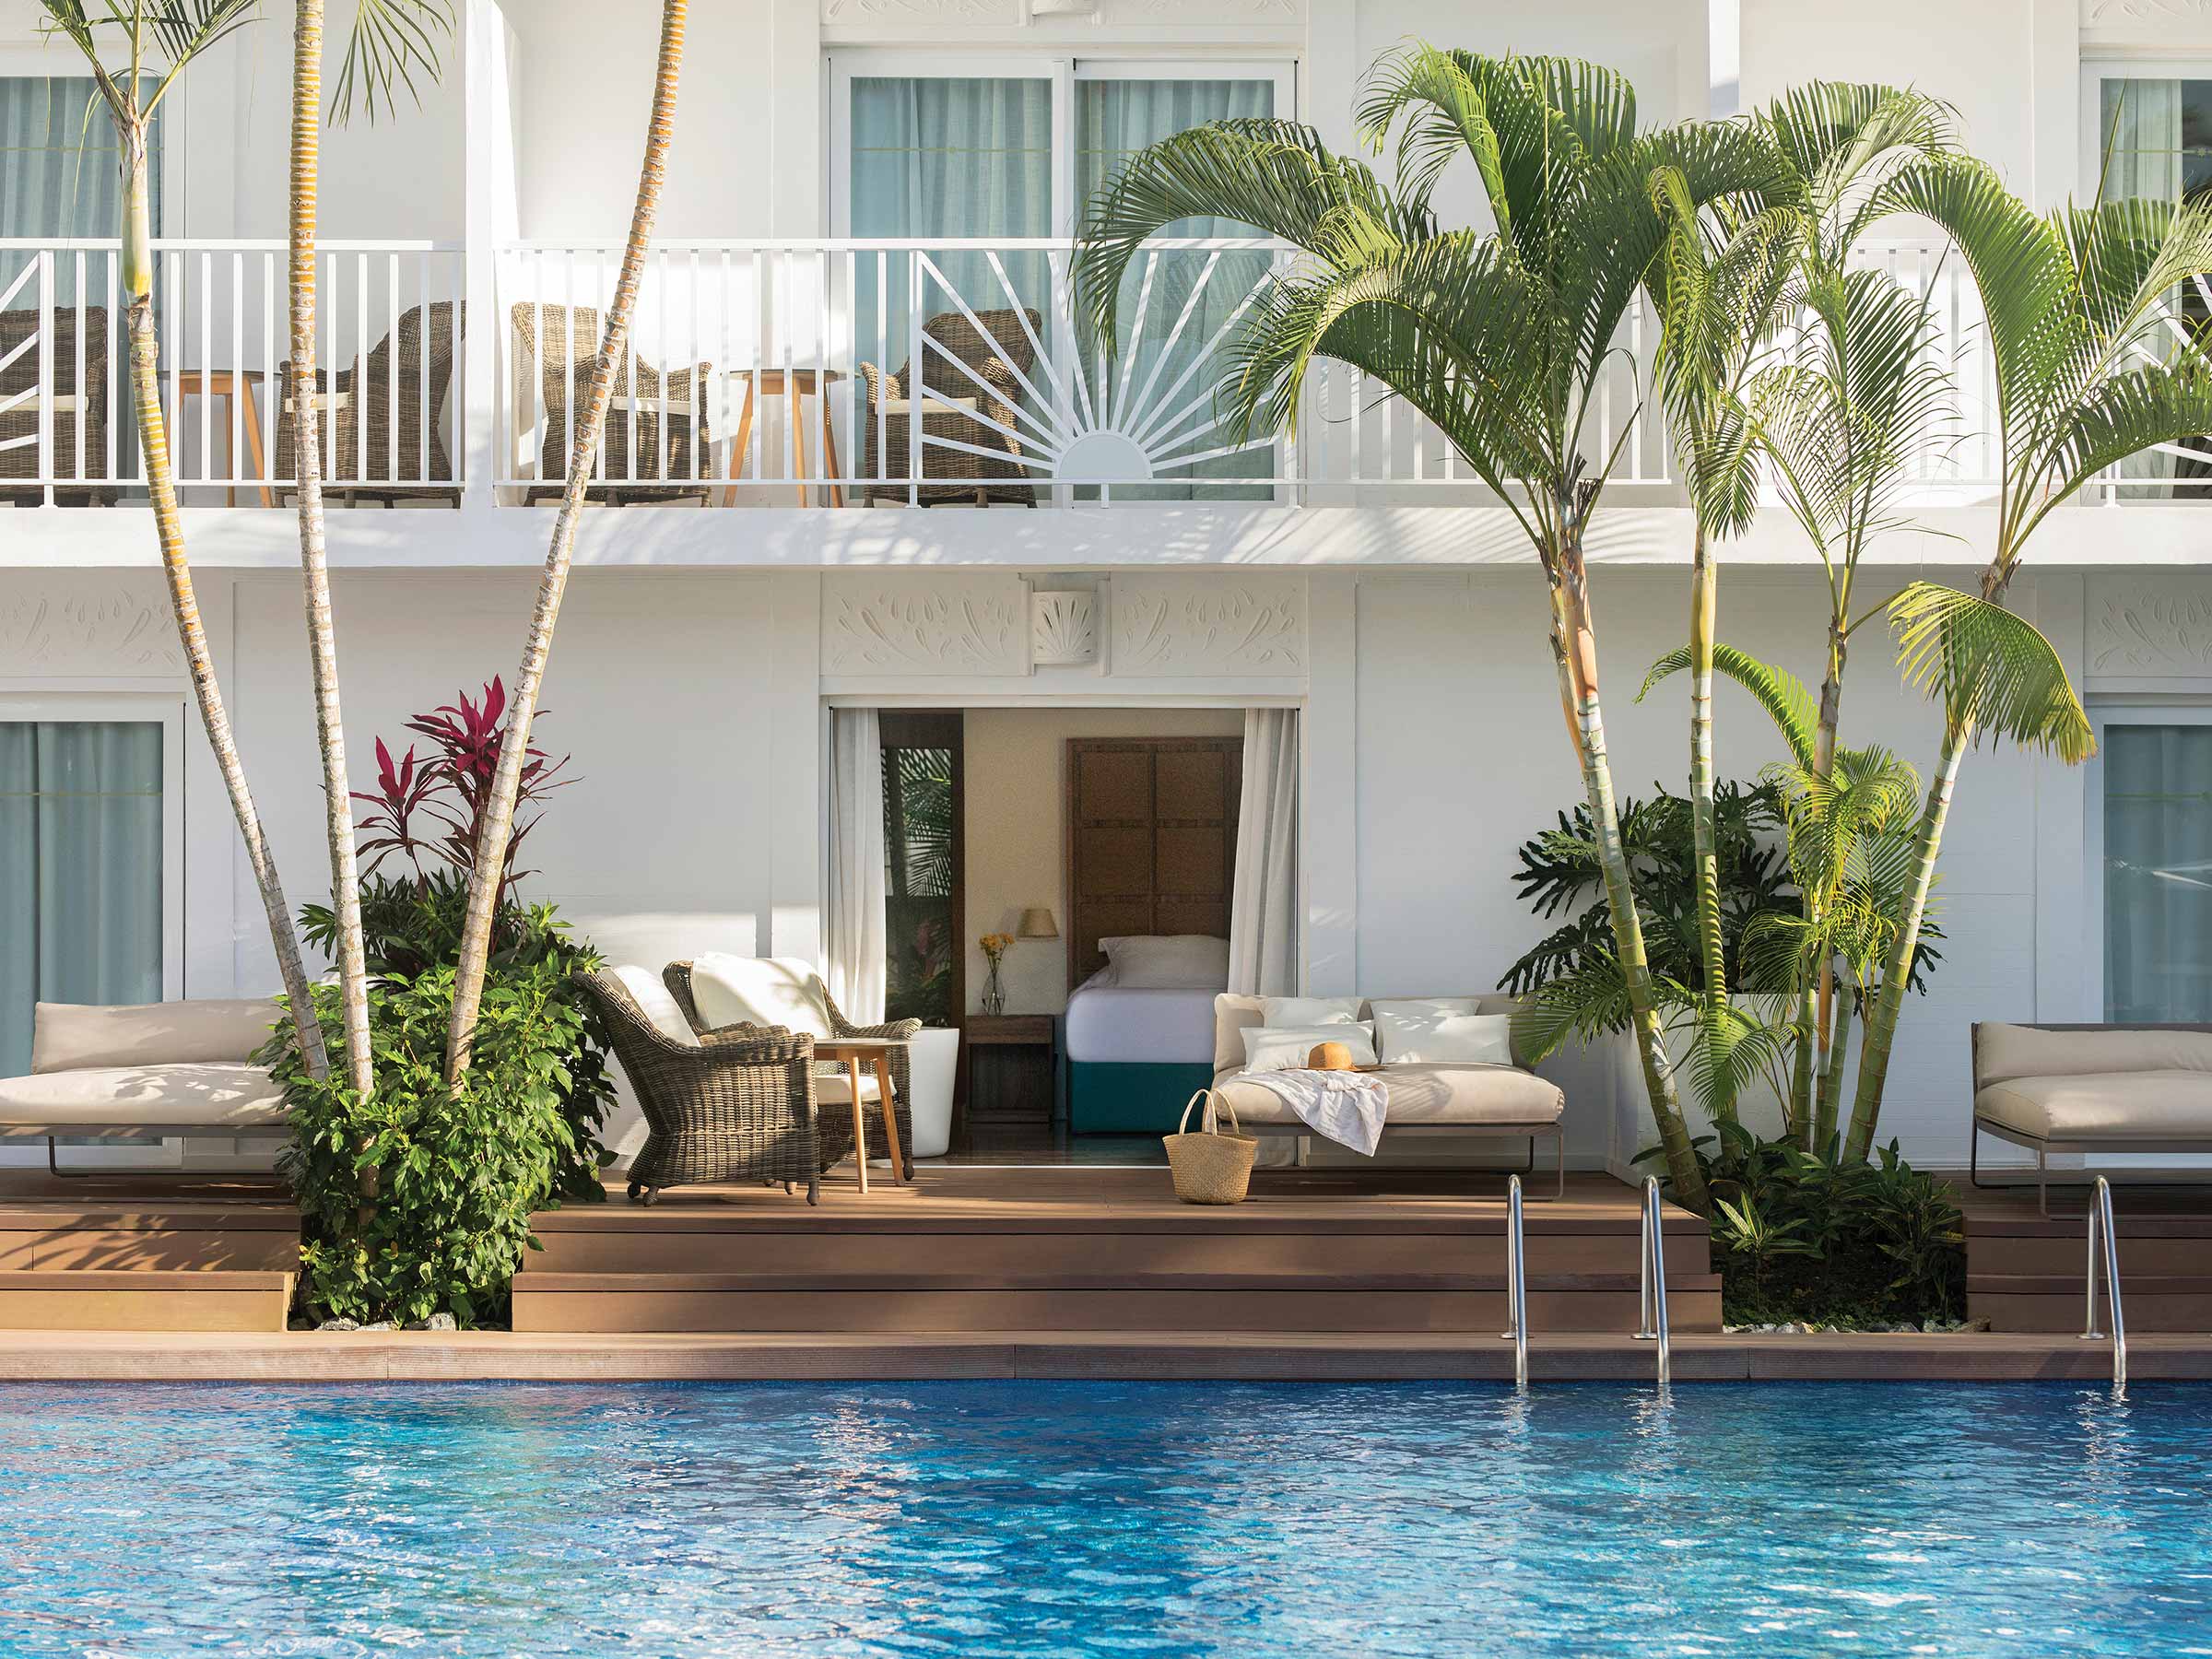 Réservez votre séjour dans une Junior Suite avec accès piscine chez Excellence Punta Cana